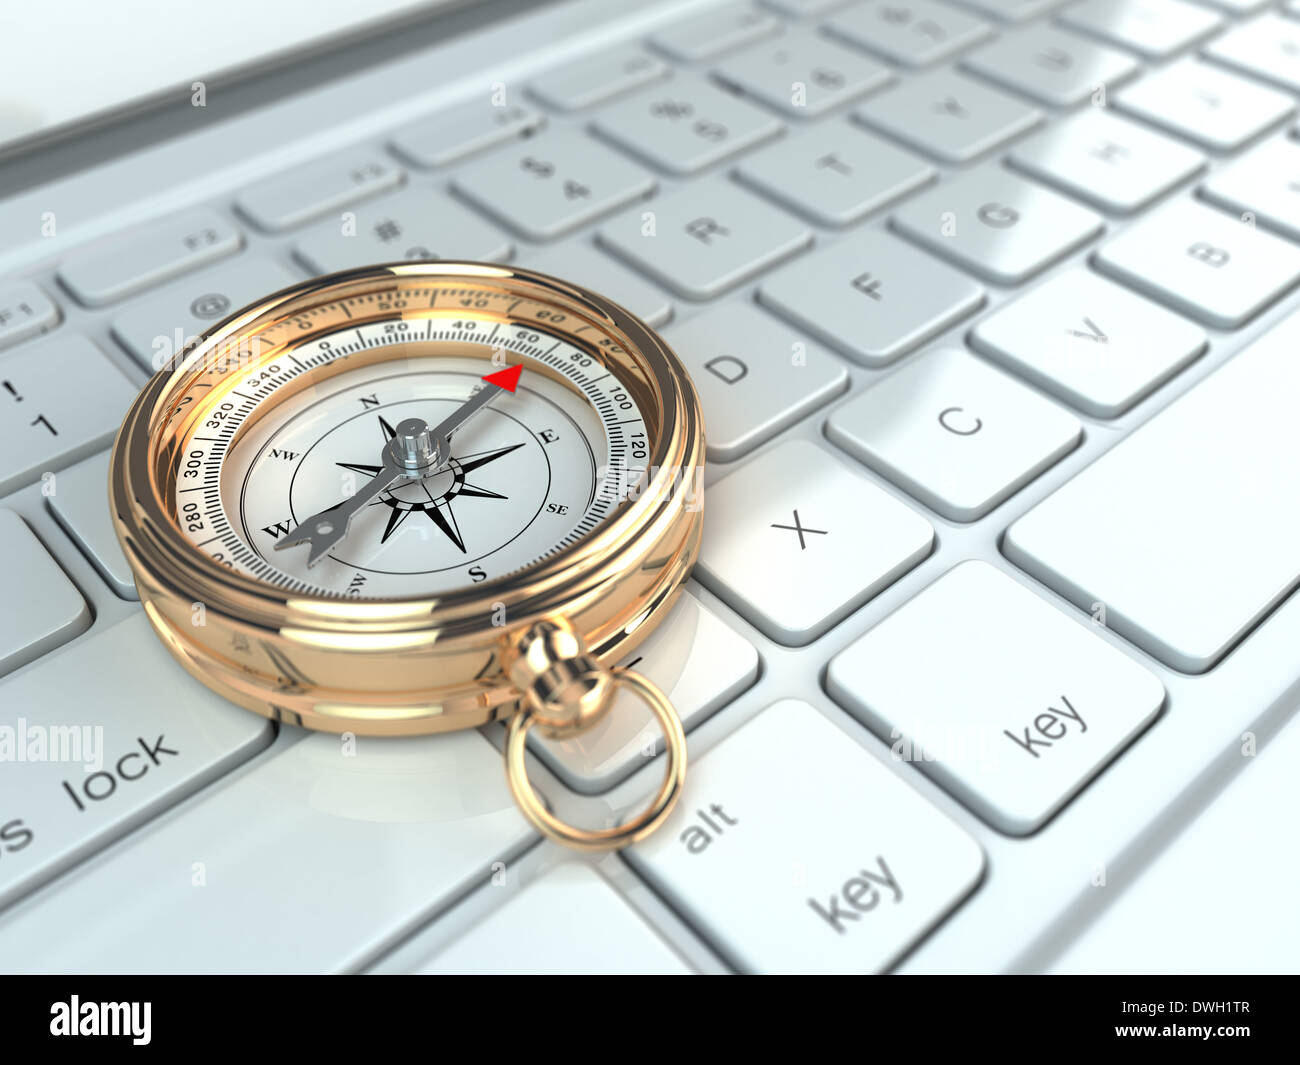 Online-Navigation. Kompass auf Laptop-Tastatur. 3D Stockfotografie - Alamy